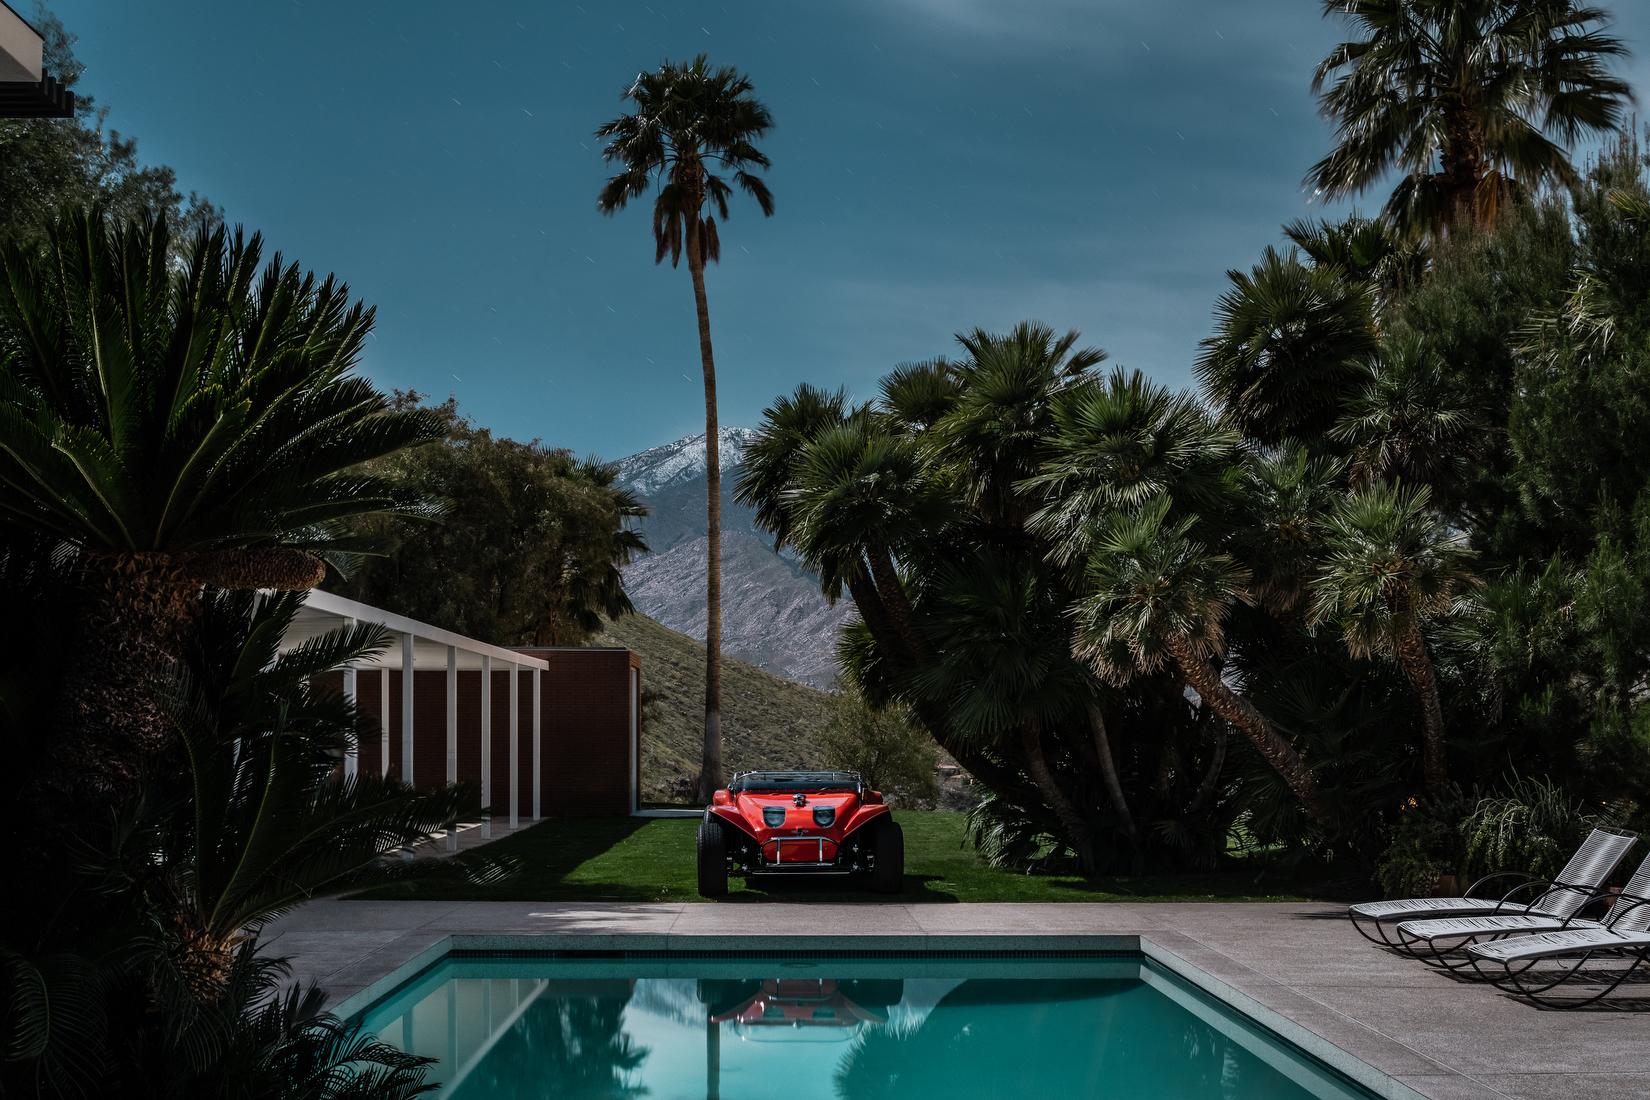 Landscape Print Tom Blachford - Pool du milieu du siècle dernier de Steve McQueen, architecture Midnight Modern de Palm Springs